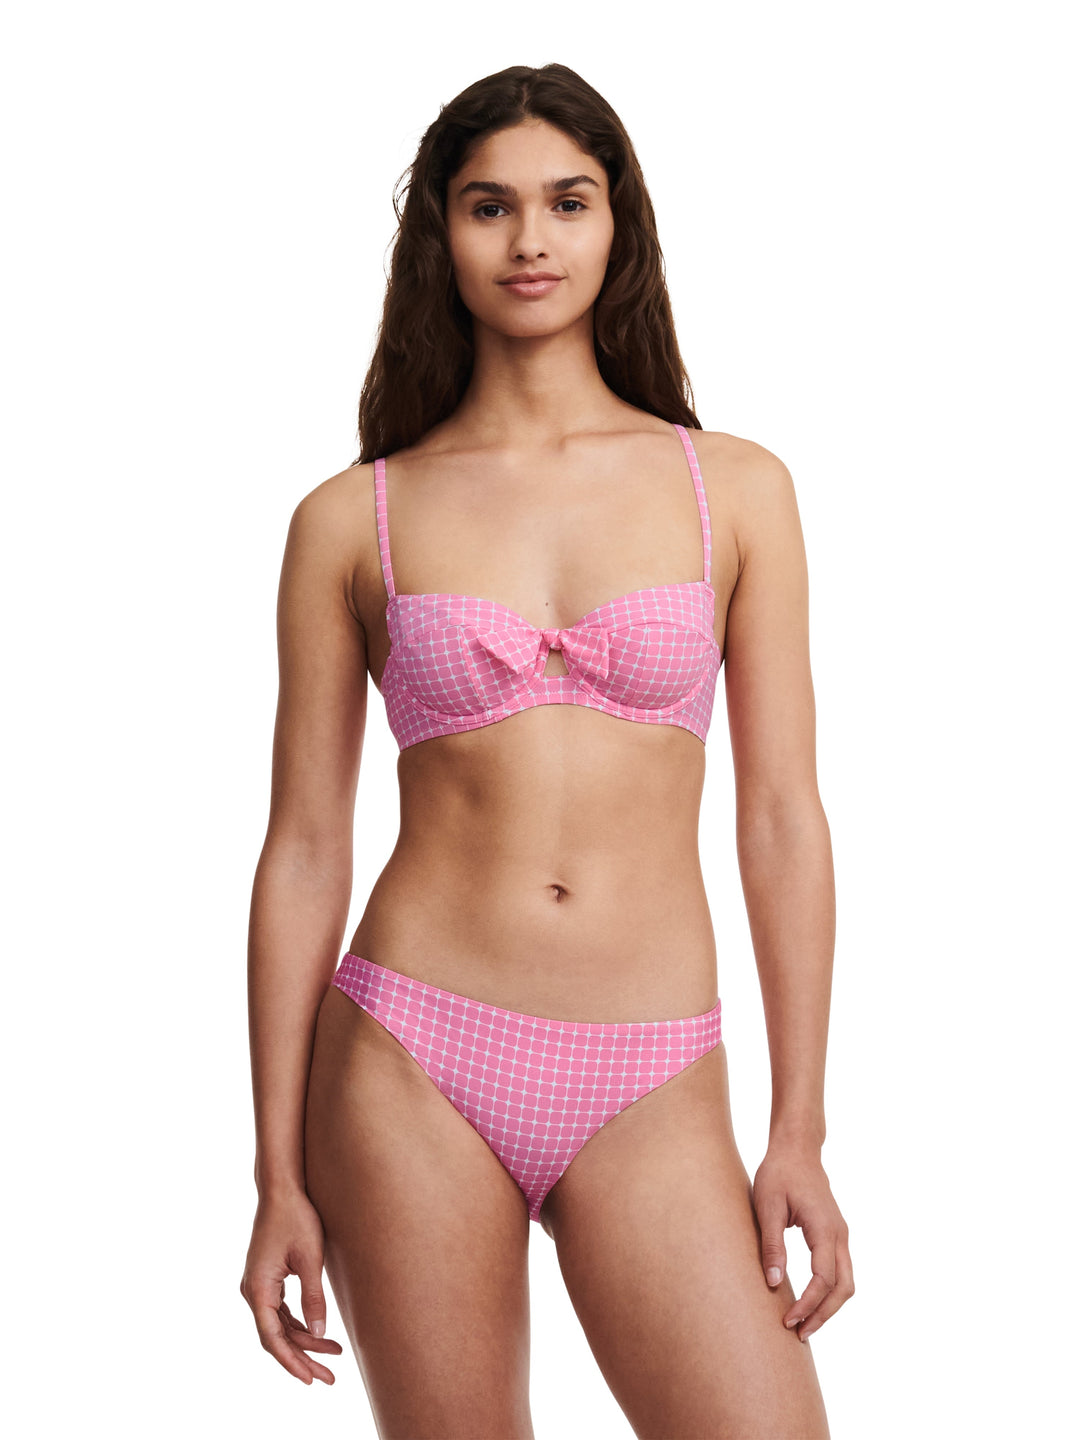 Passionata Swimwear Jaia Bikini Brief - Pink Dots Half Cup Bikini Passionata 